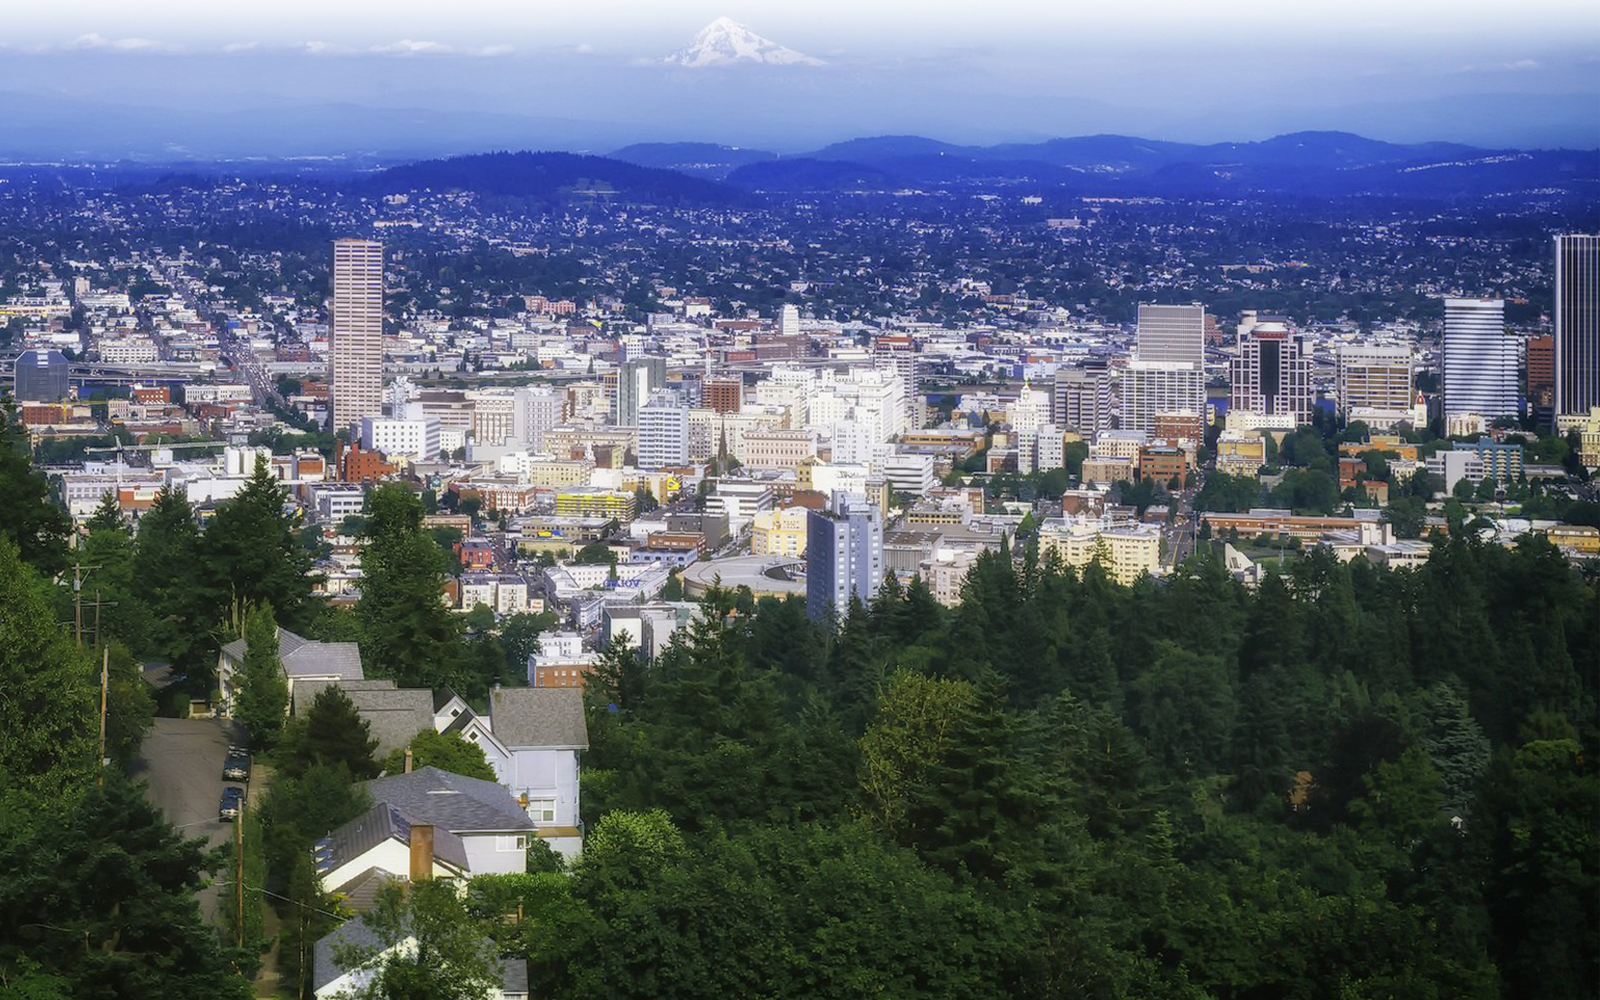 Portland cityscape